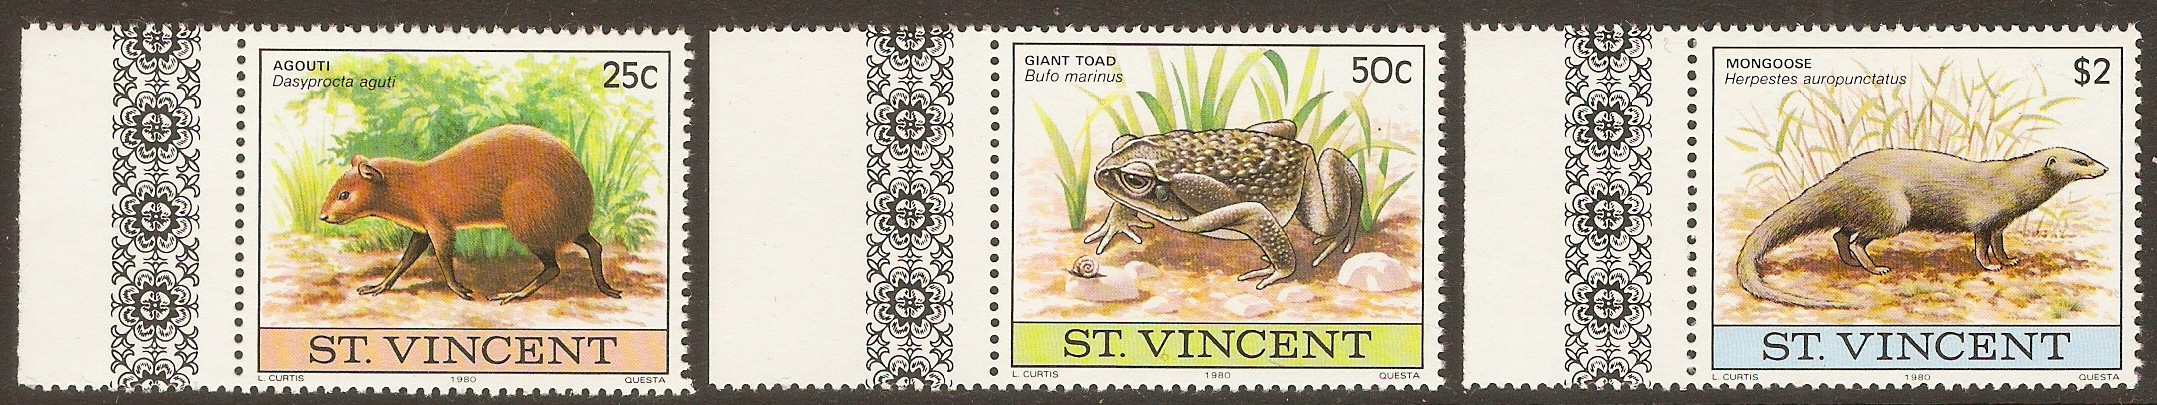 St Vincent 1980 Wildlife set. SG648-SG650.